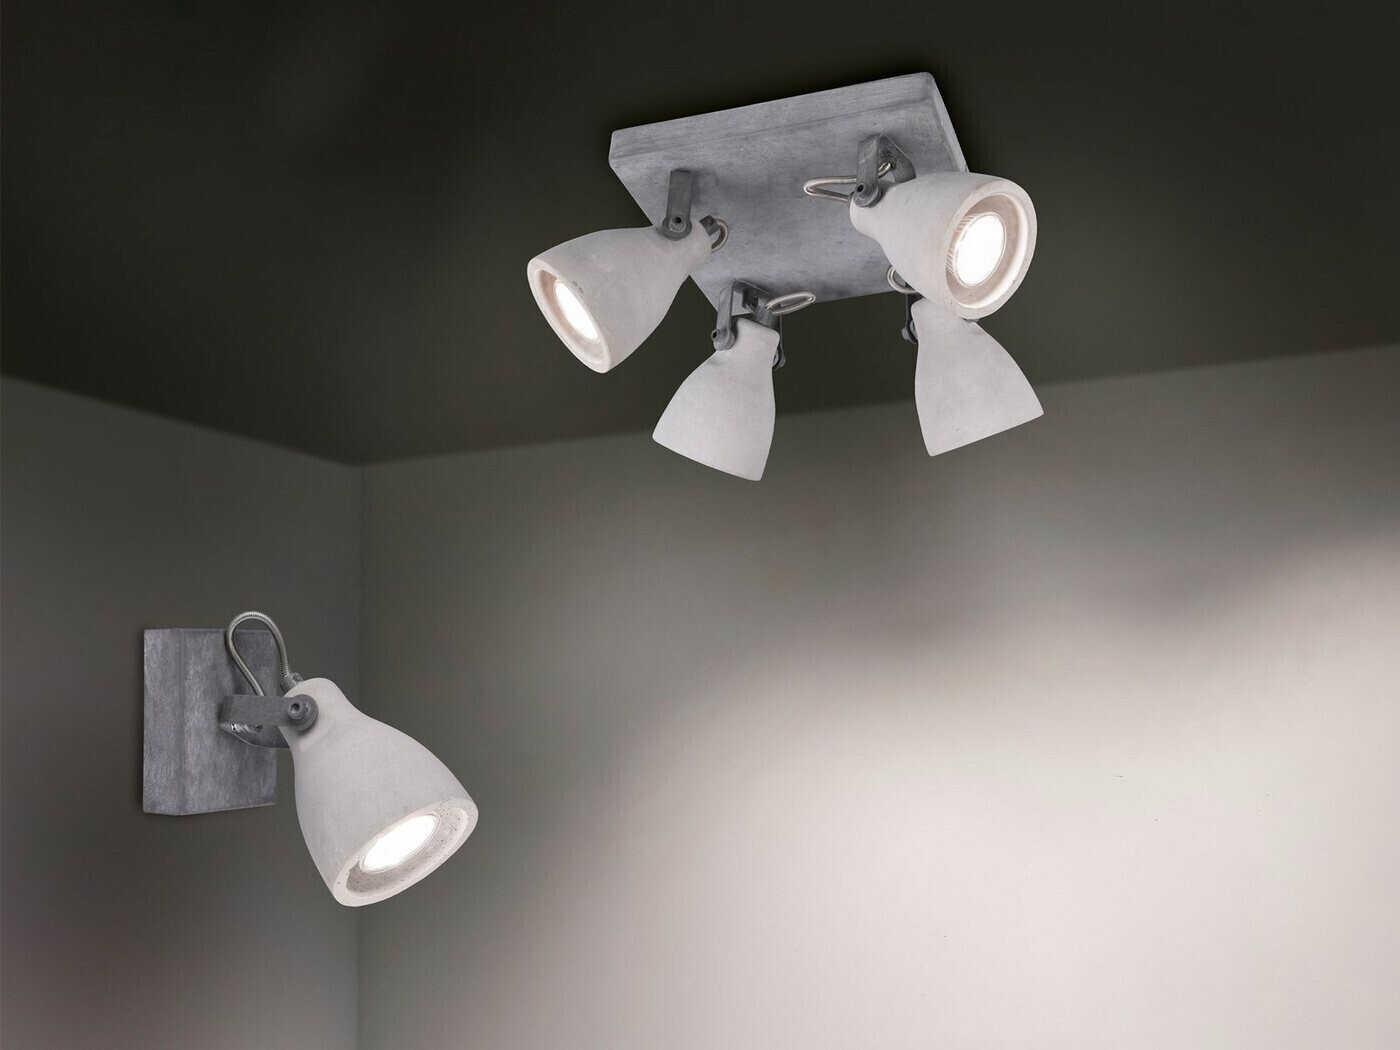 € Trio Wohnzimmerlampe | ab Retro 24,99 Spot Deckenleuchte - bei Design Beton schwenkbar mit 1 Preisvergleich im LED